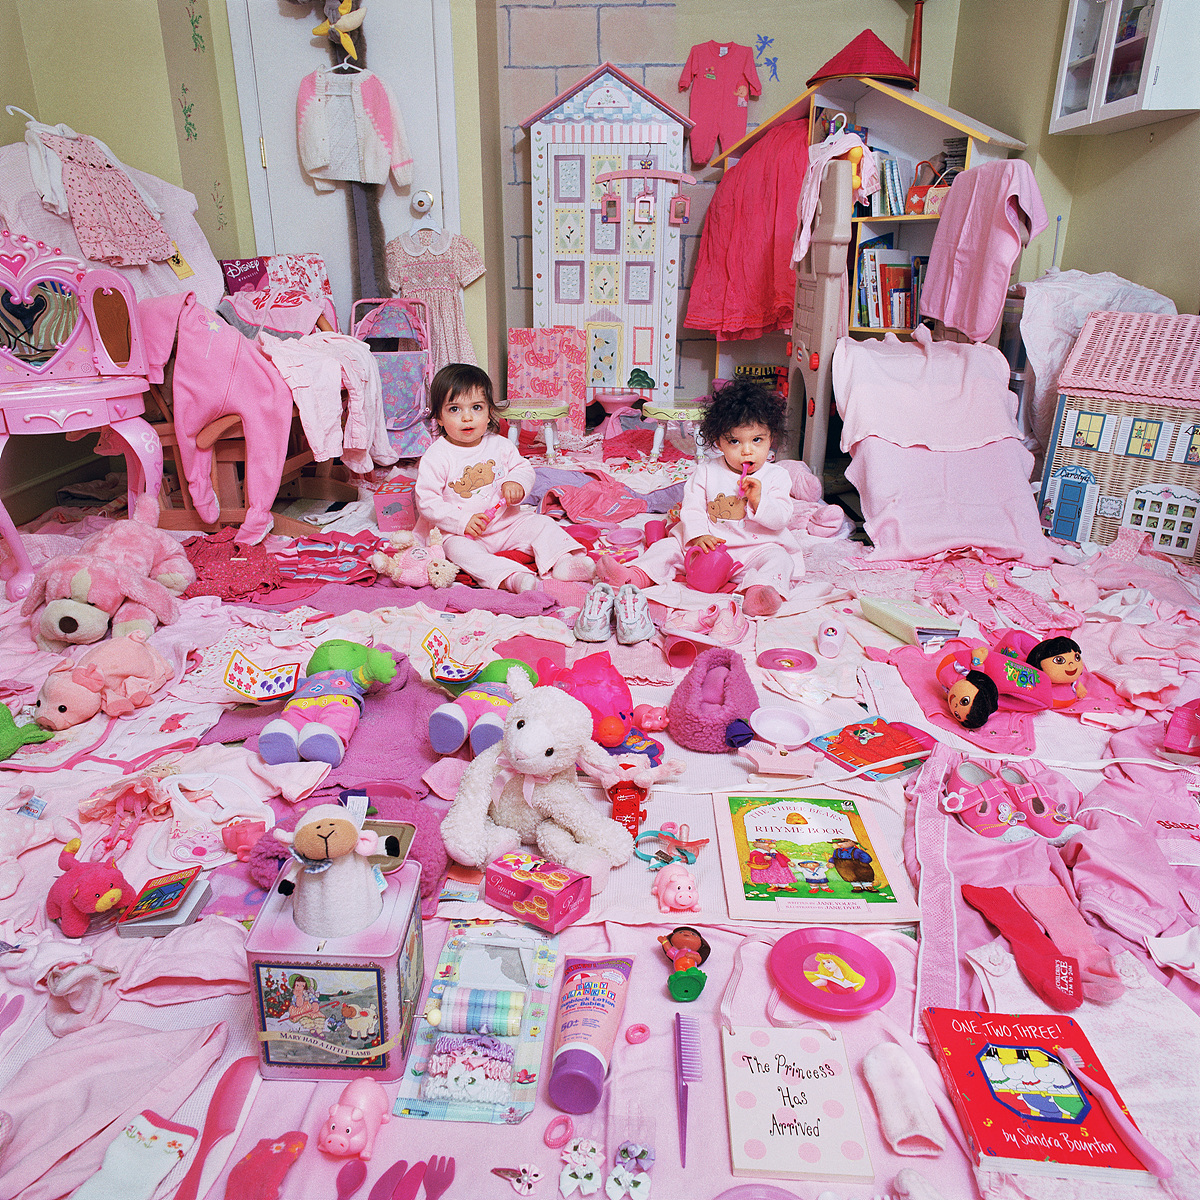 핑크 프로젝트 I-로렌과 캐롤린 그리고 그들의 핑크색 물건들, 뉴욕, 미국, 라이트젯 프린트, 2006